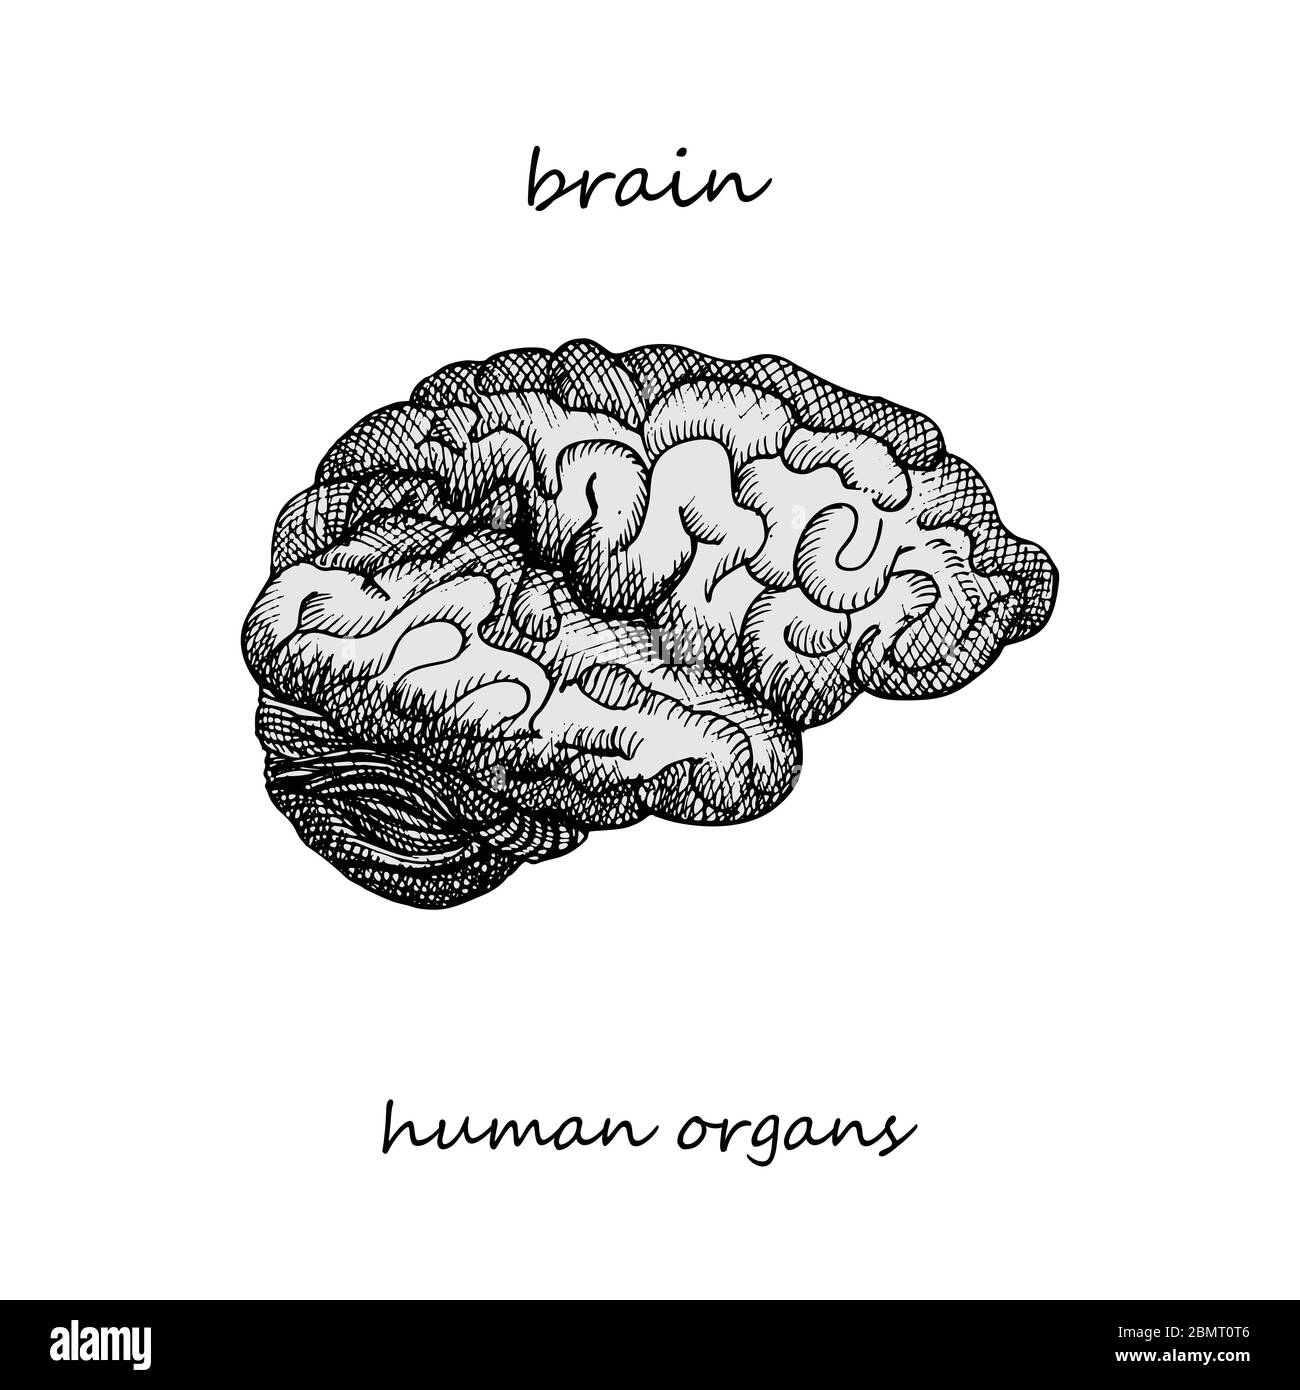 Cerveau. Icône réaliste dessinée à la main des organes internes humains. Gravure art. Style d'esquisse. Concept de conception pour vos projets médicaux post-viral Illustration de Vecteur